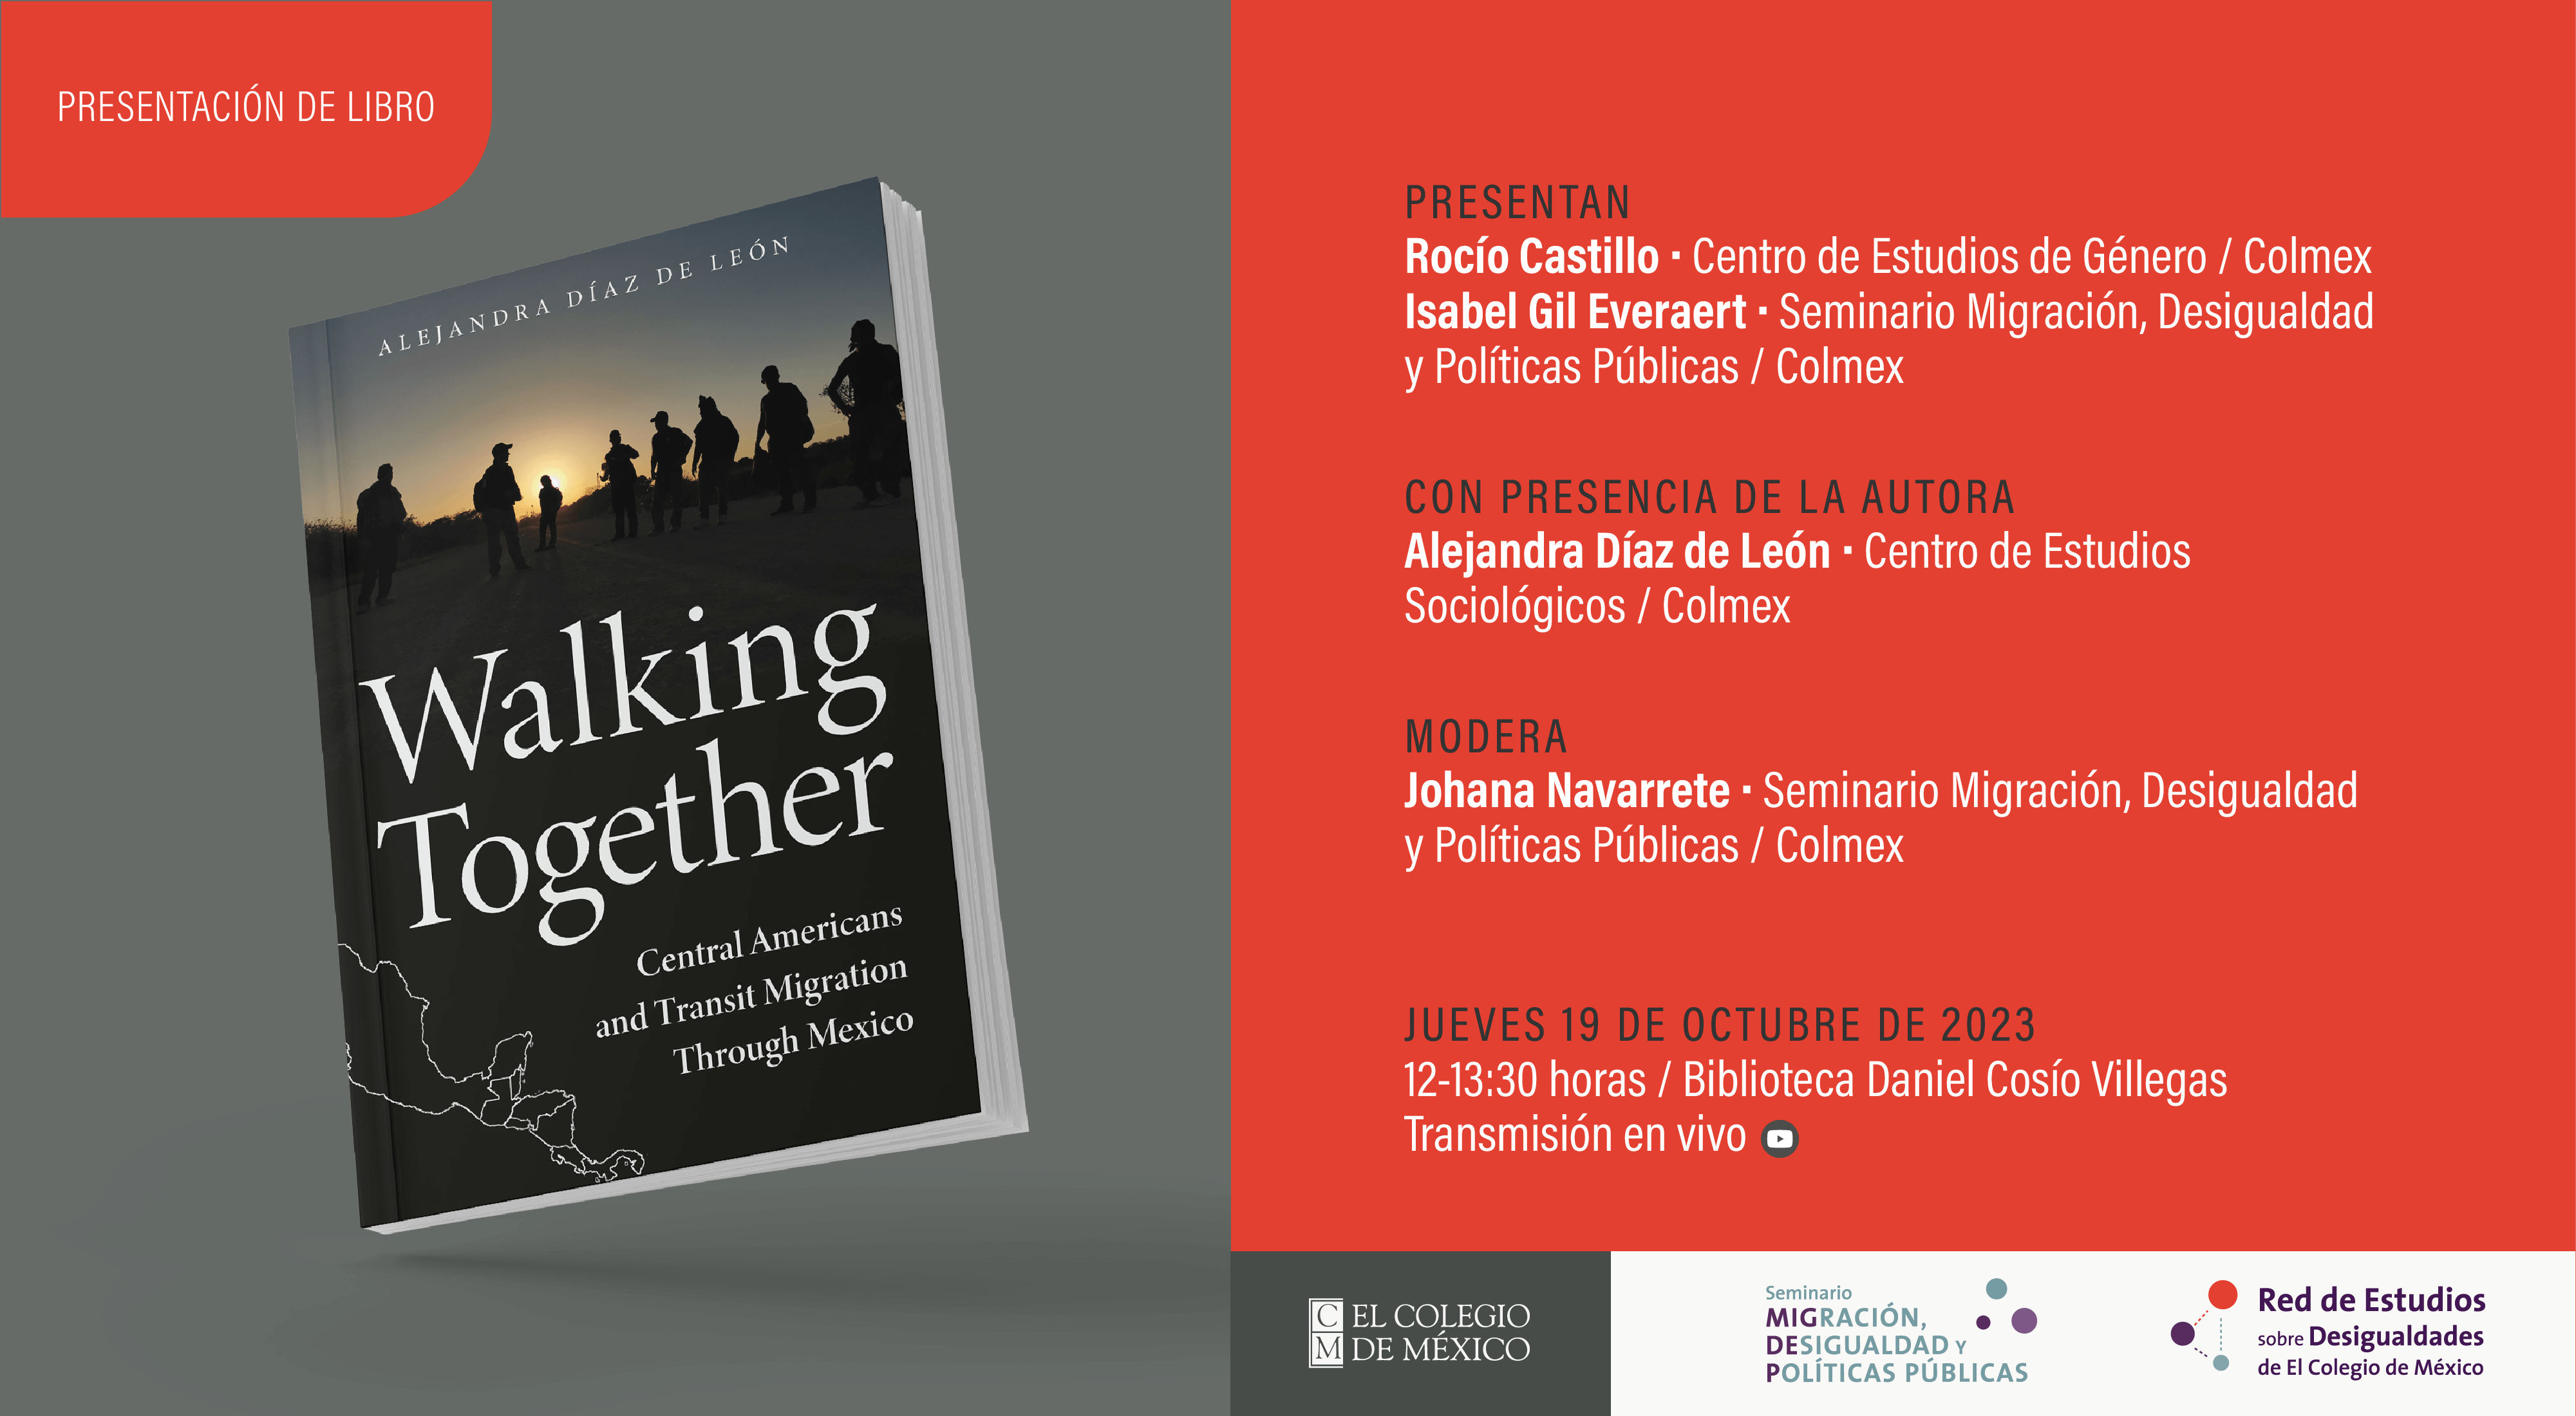 Presentación del libro: Walking together